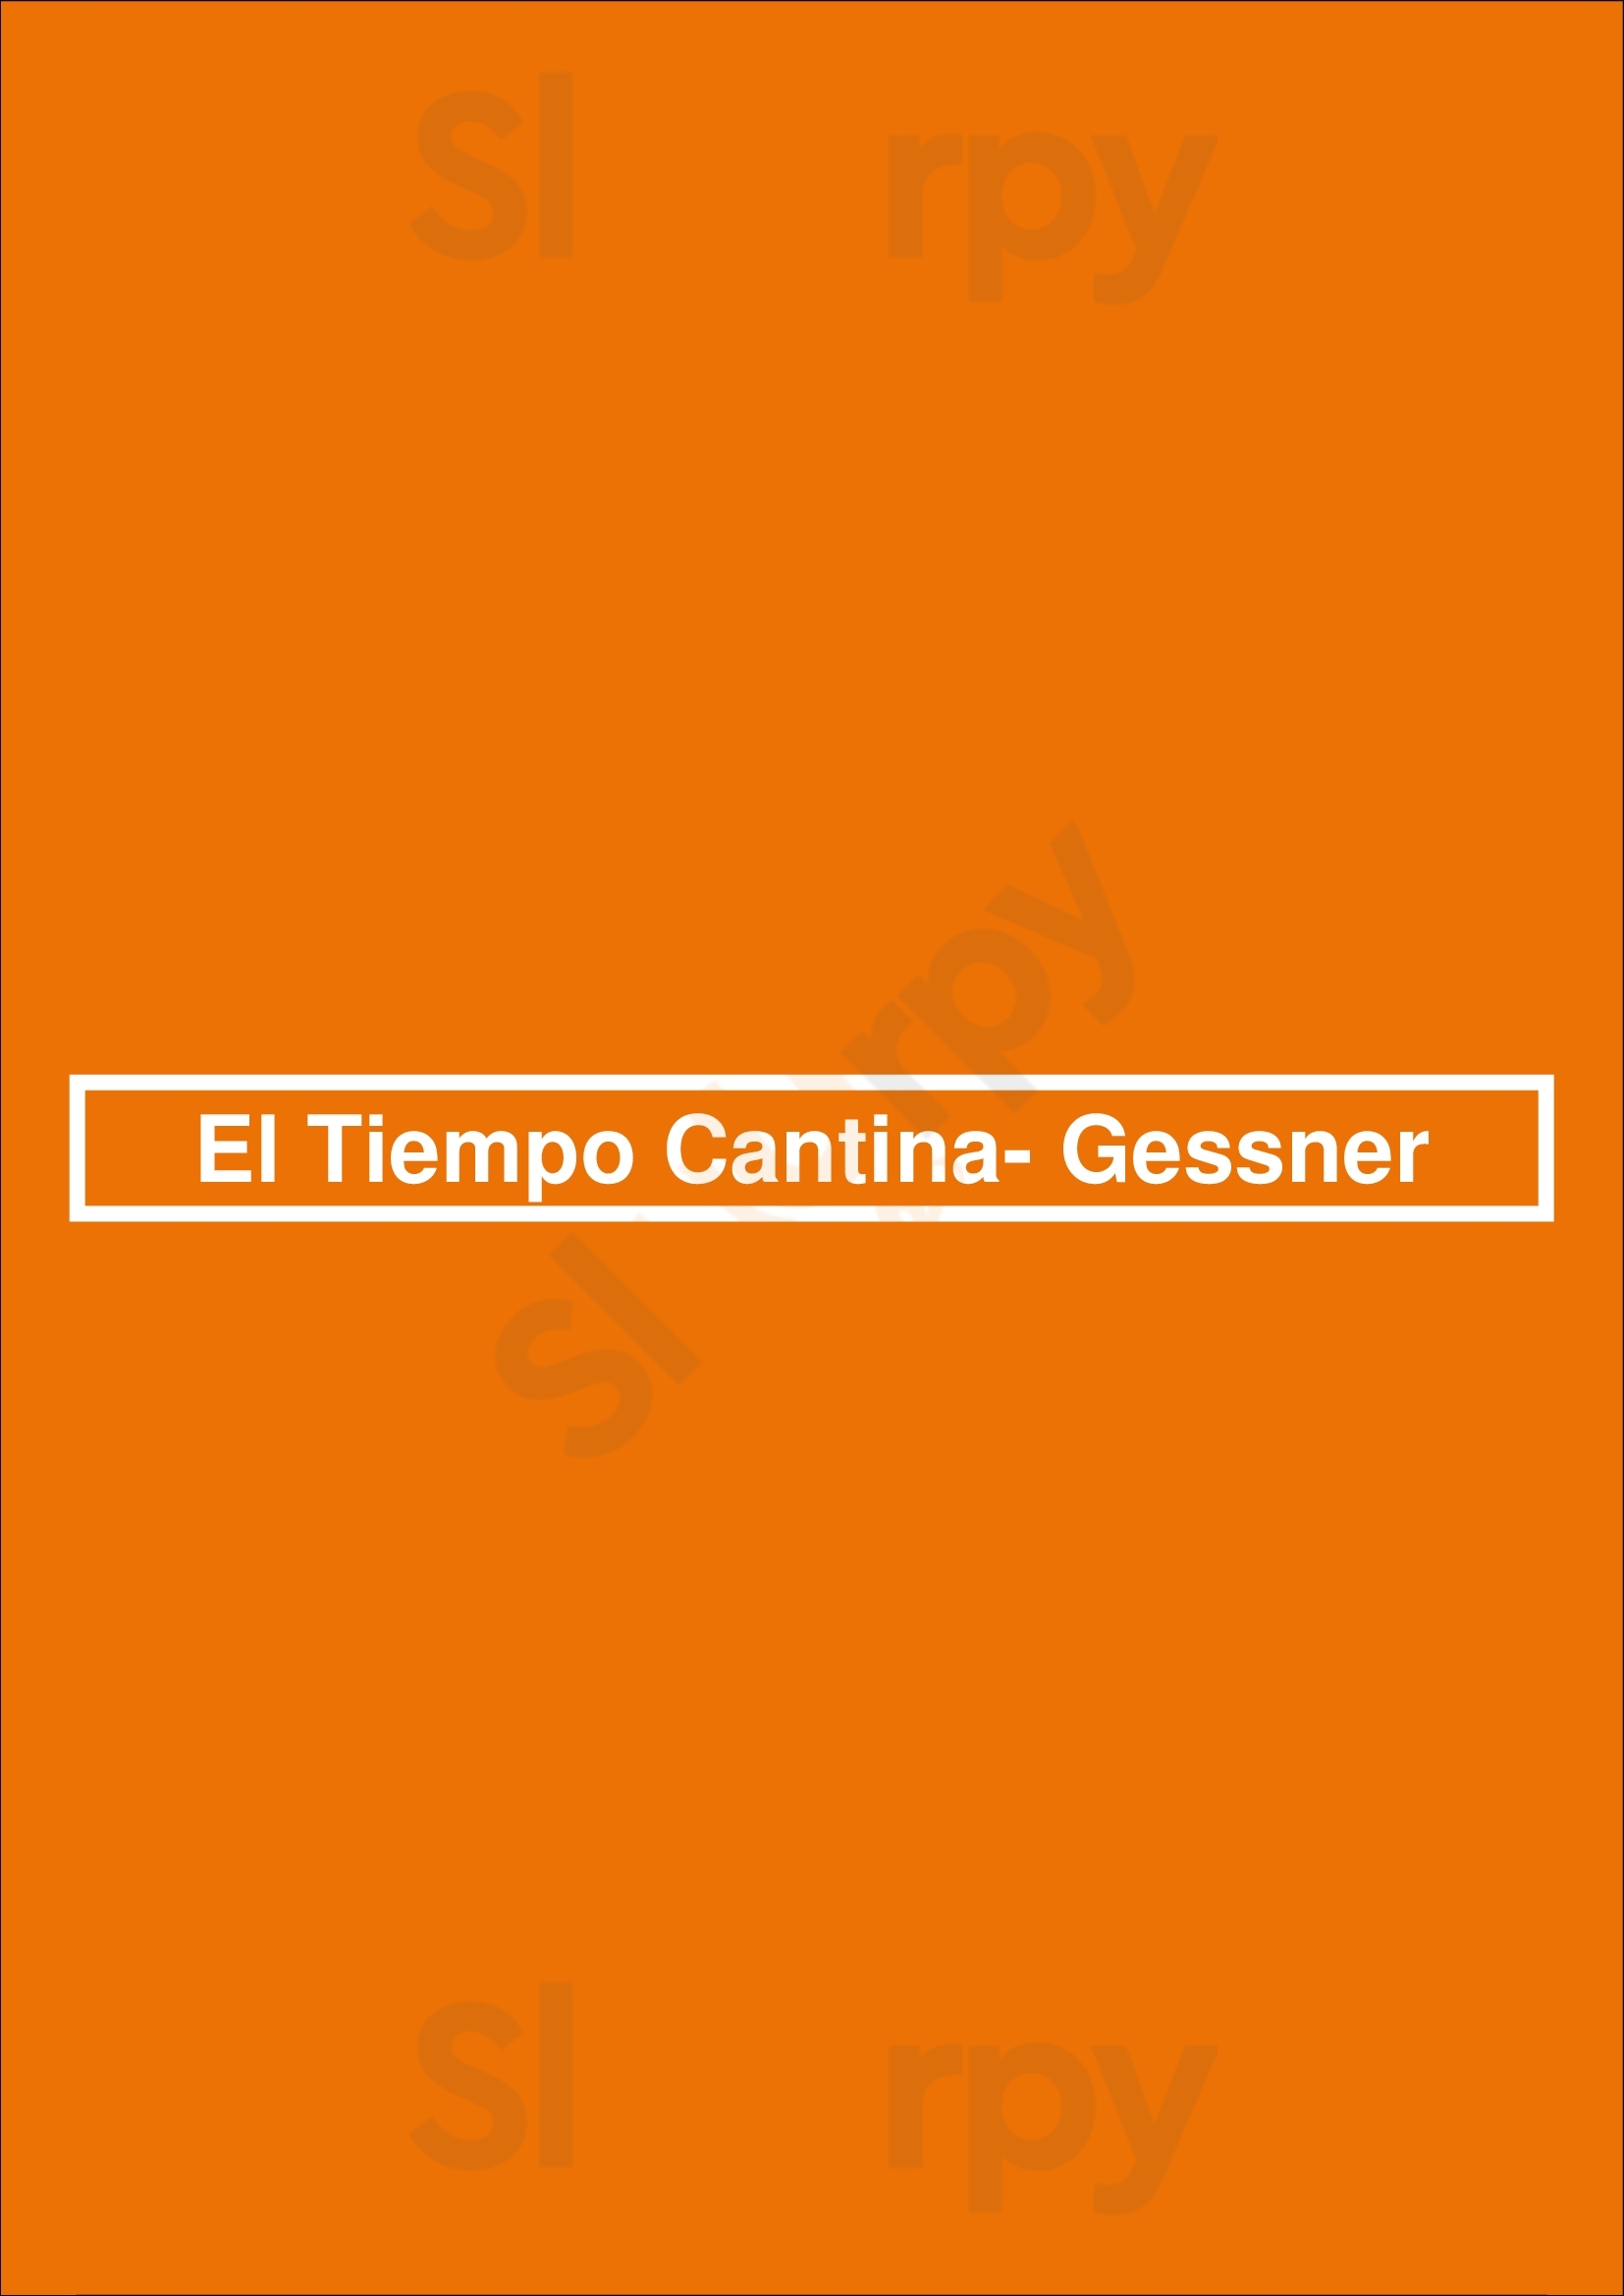 El Tiempo Cantina- Gessner Houston Menu - 1